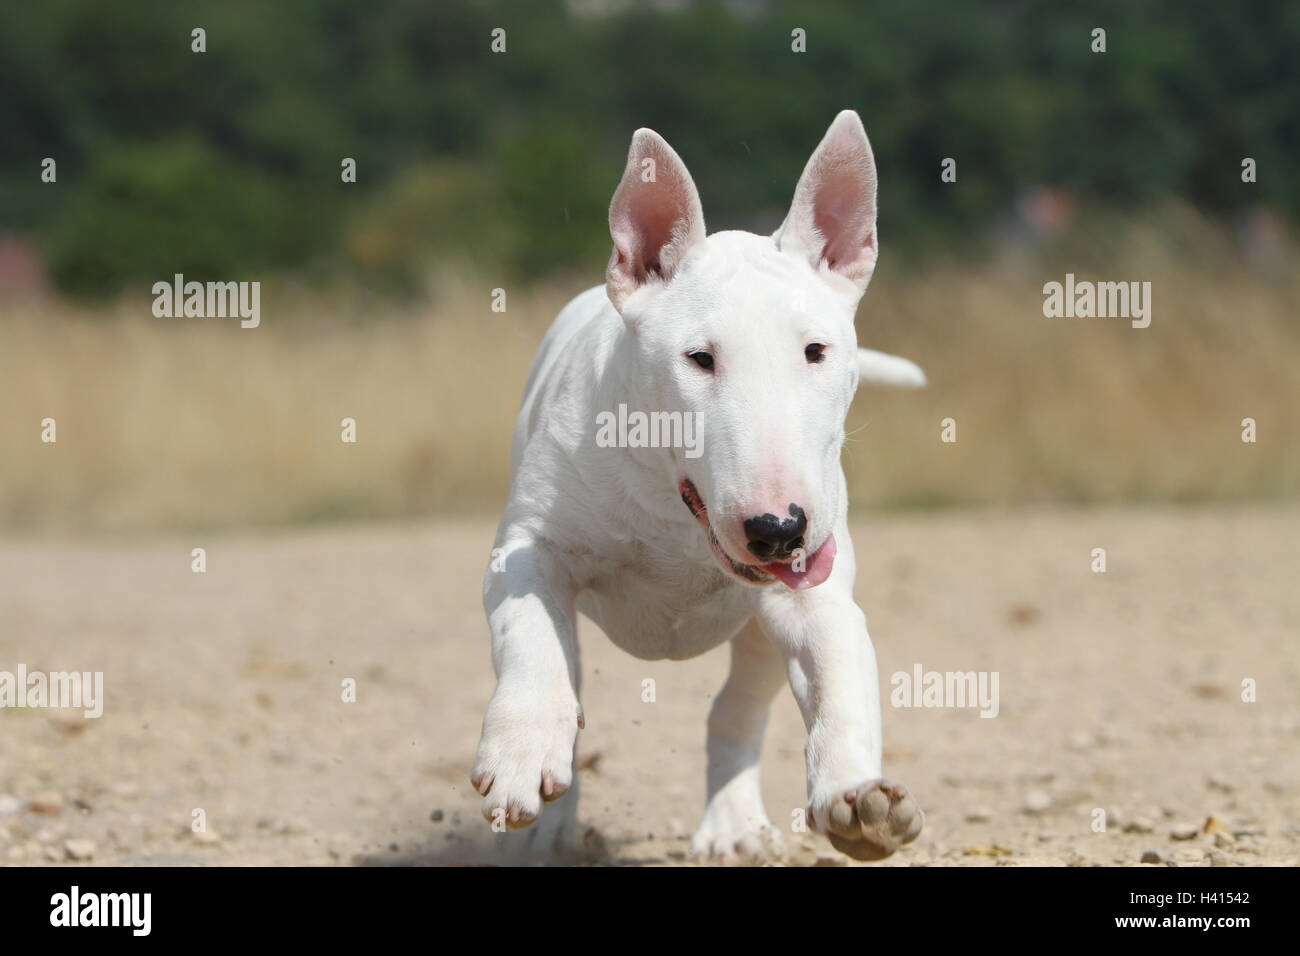 Dog Bull Terrier Anglais / bully / Gladator face portrait blanc lors de l'exécution Banque D'Images